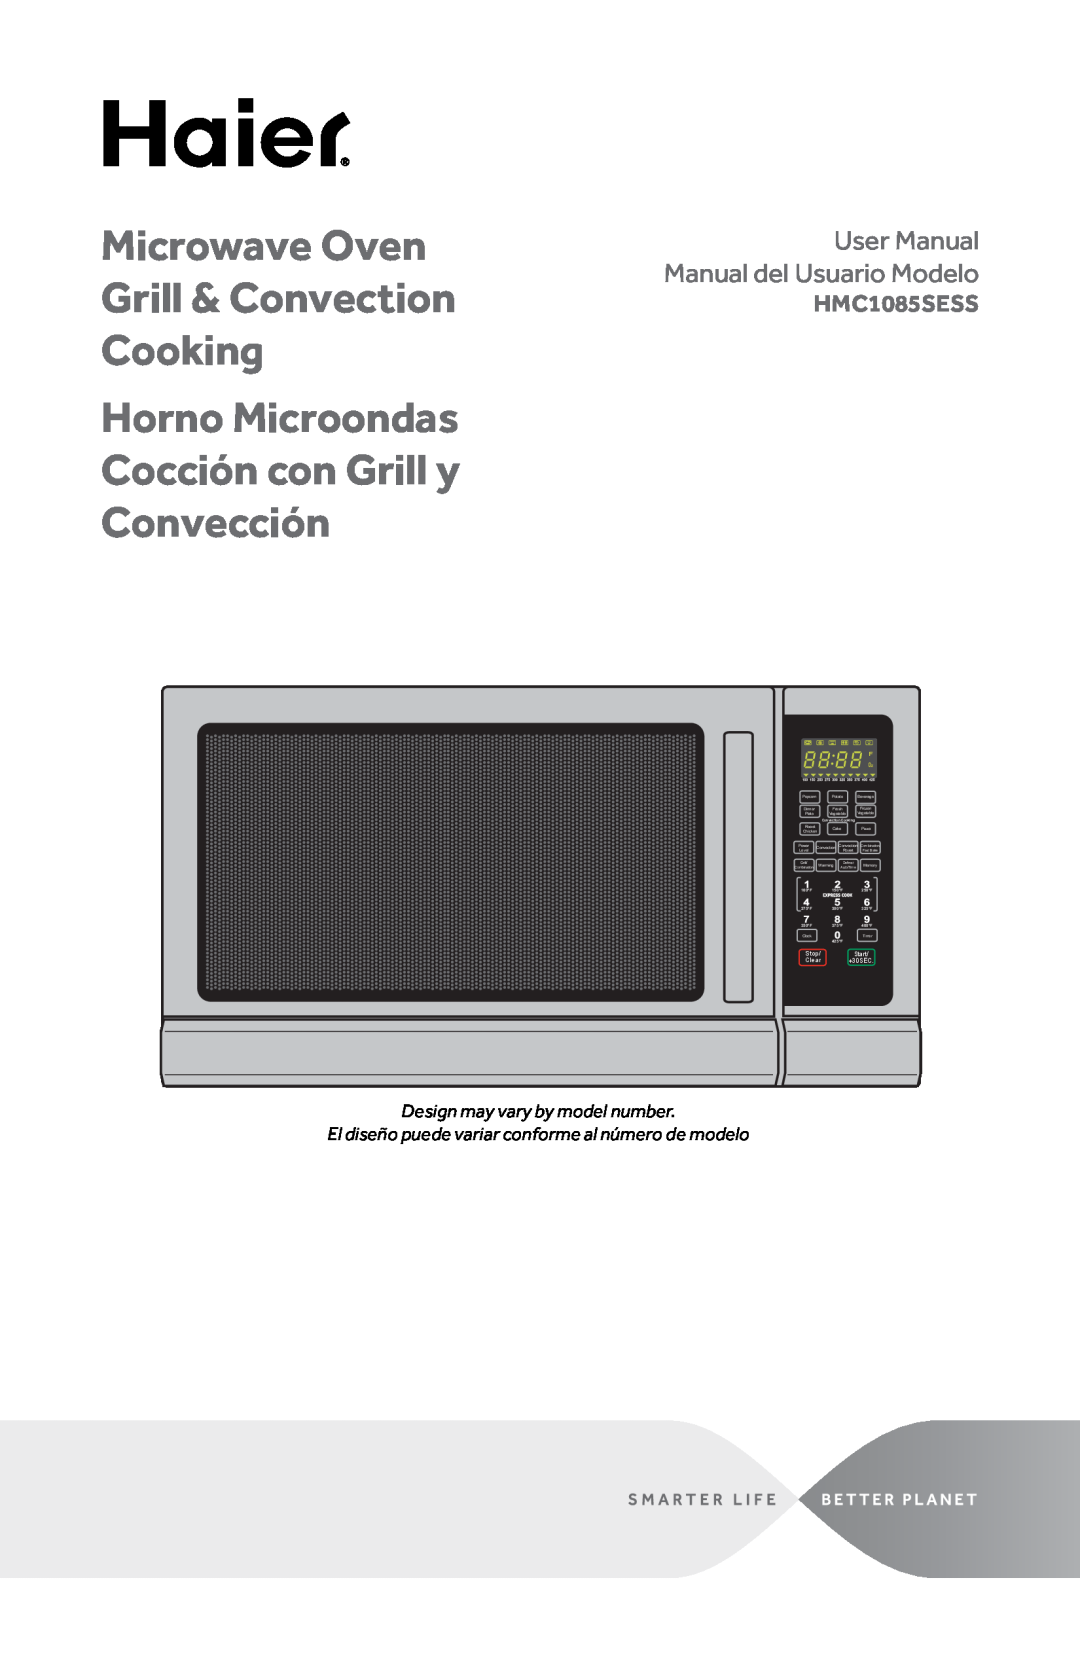 Haier HMC1085SESS user manual Microwave Oven Grill & Convection Cooking, Horno Microondas Cocción con Grill y Convección 